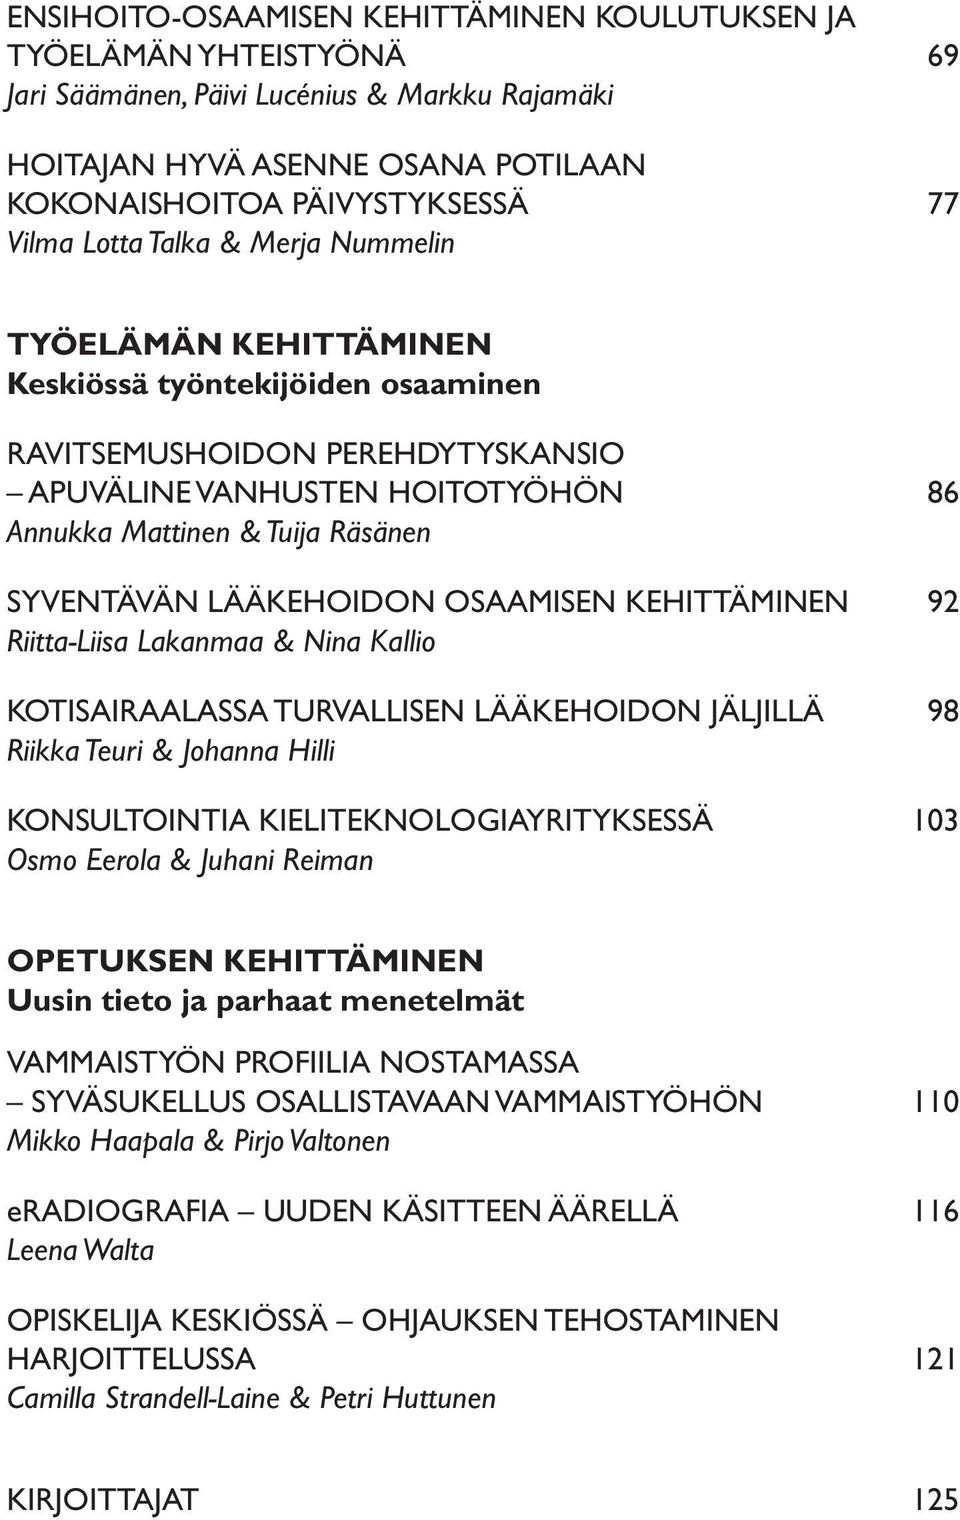 LÄÄKEHOIDON OSAAMISEN KEHITTÄMINEN 92 Riitta-Liisa Lakanmaa & Nina Kallio KOTISAIRAALASSA TURVALLISEN LÄÄKEHOIDON JÄLJILLÄ 98 Riikka Teuri & Johanna Hilli KONSULTOINTIA KIELITEKNOLOGIAYRITYKSESSÄ 103